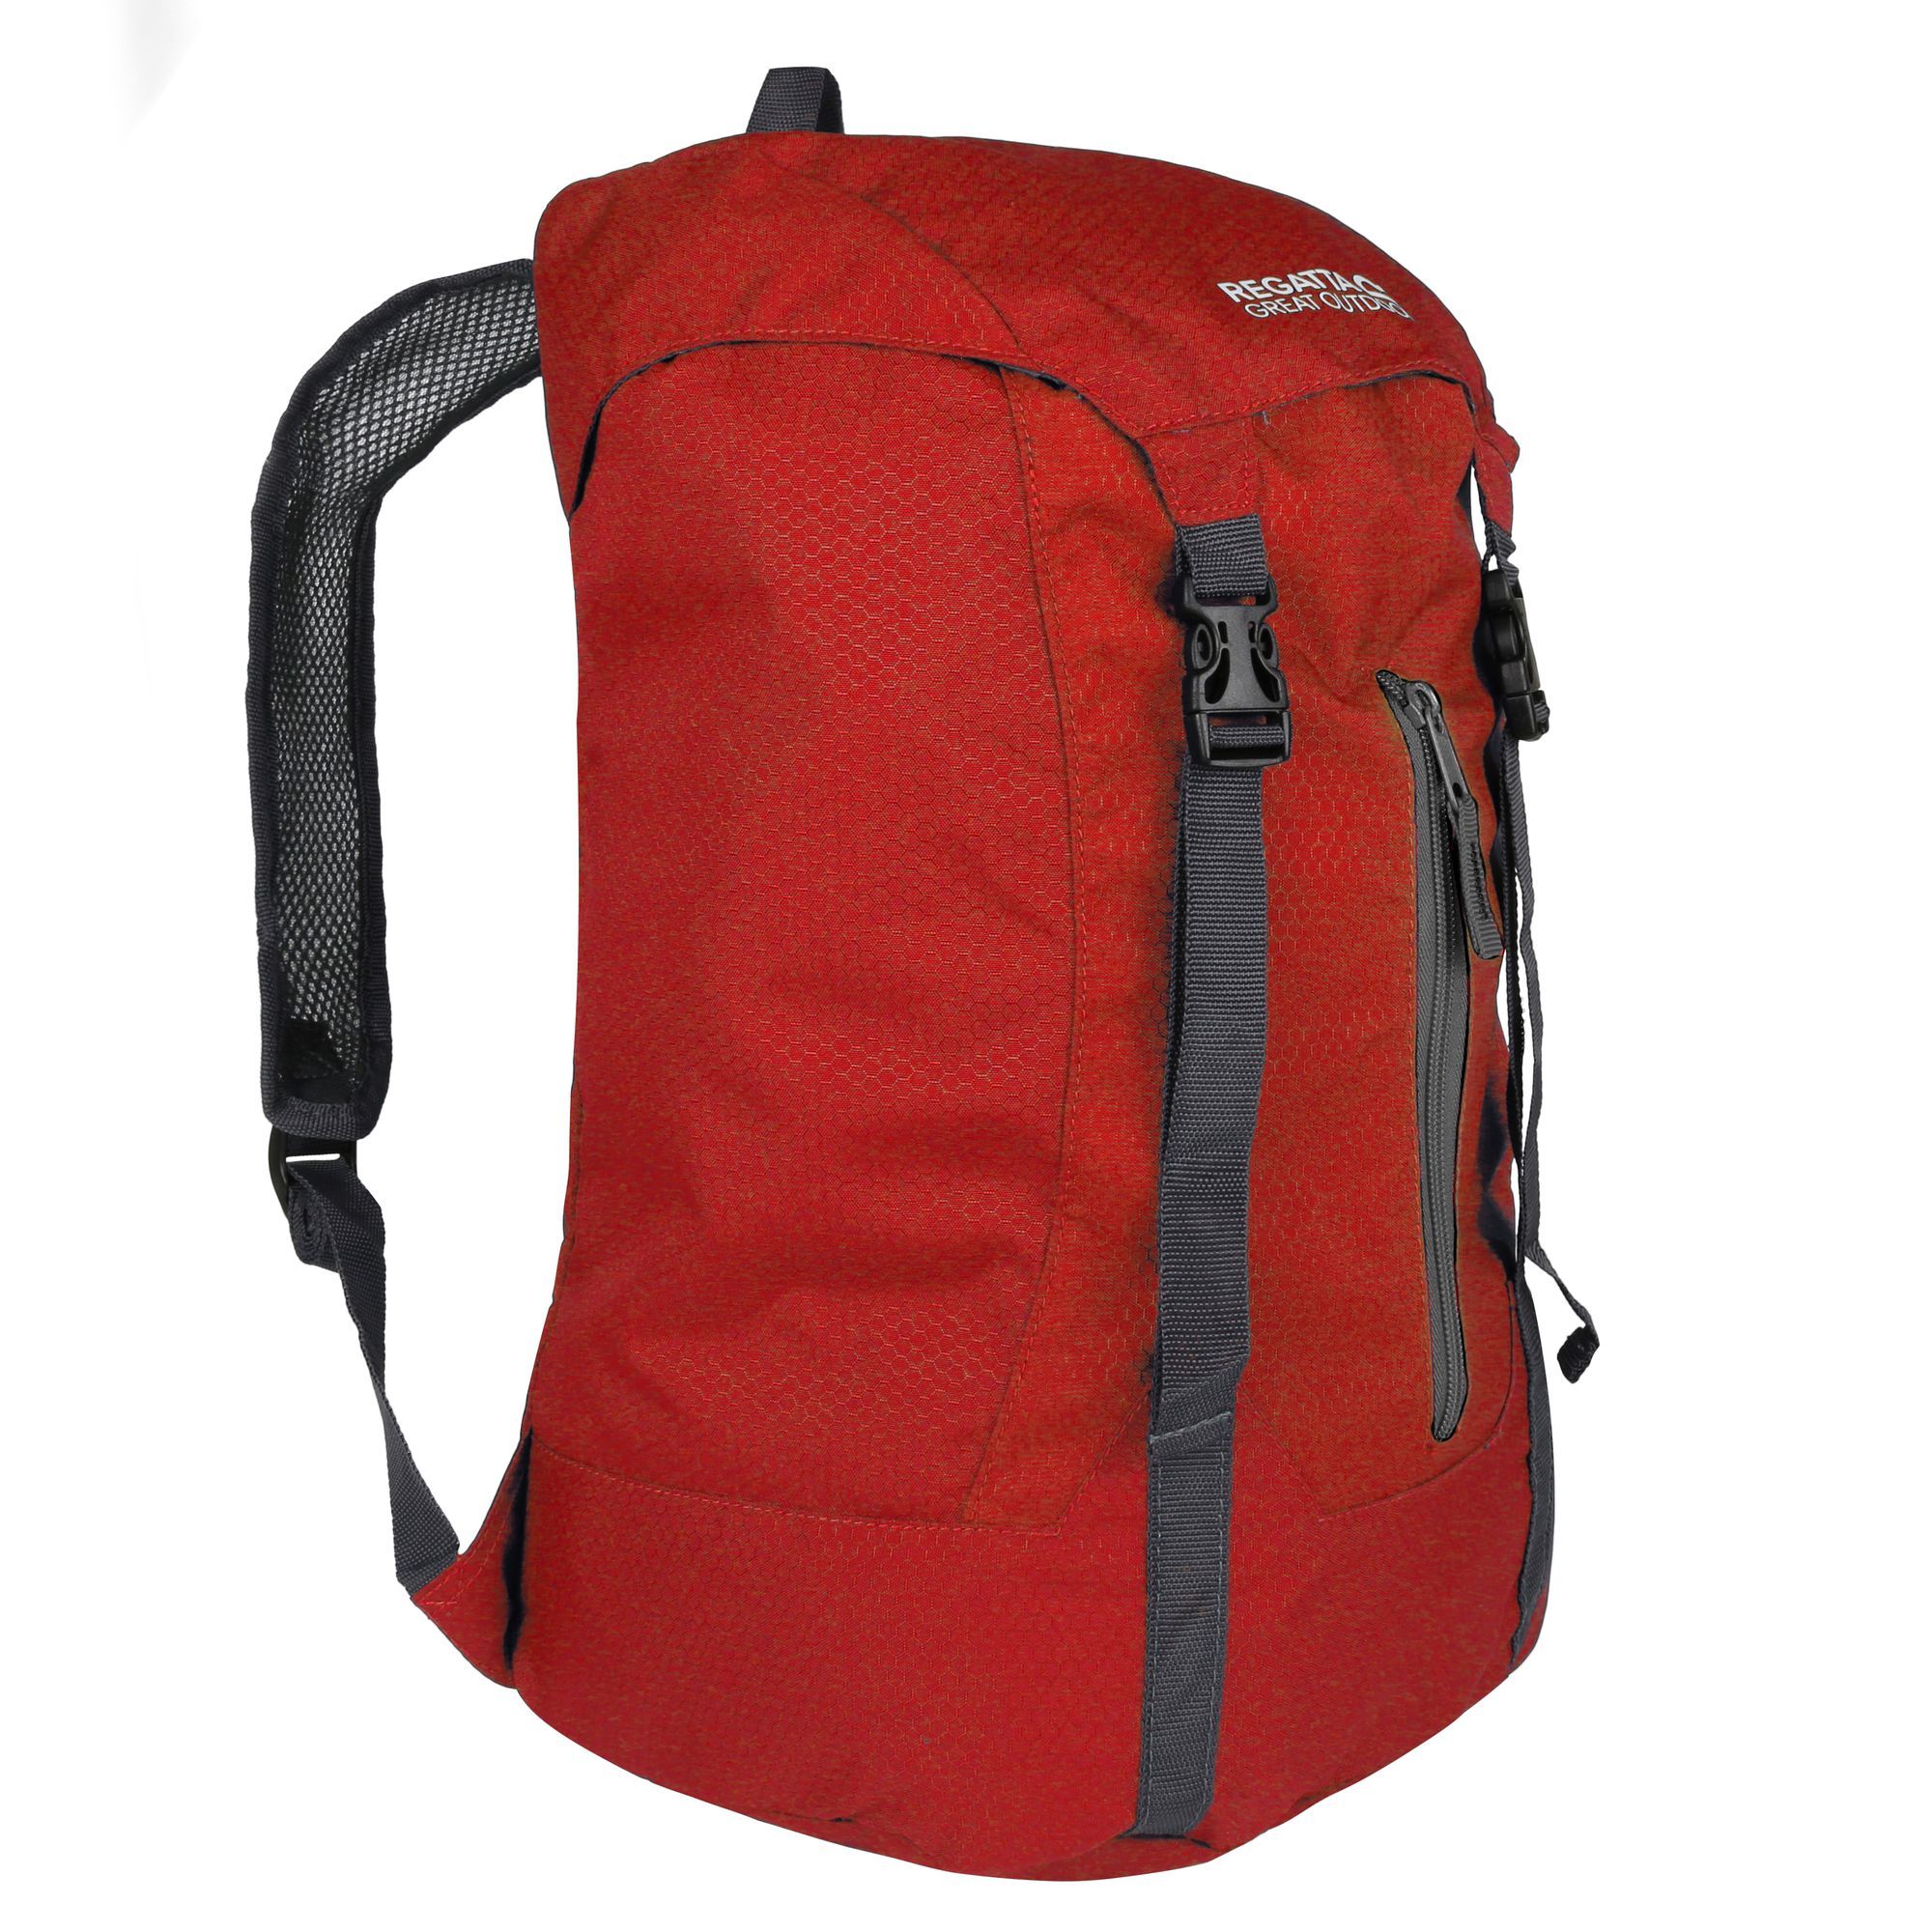 Great Outdoors Easypack Packaway Rucksack/backpack (25 Litros) Regatta Easypack Ii | Sport Zone MKP